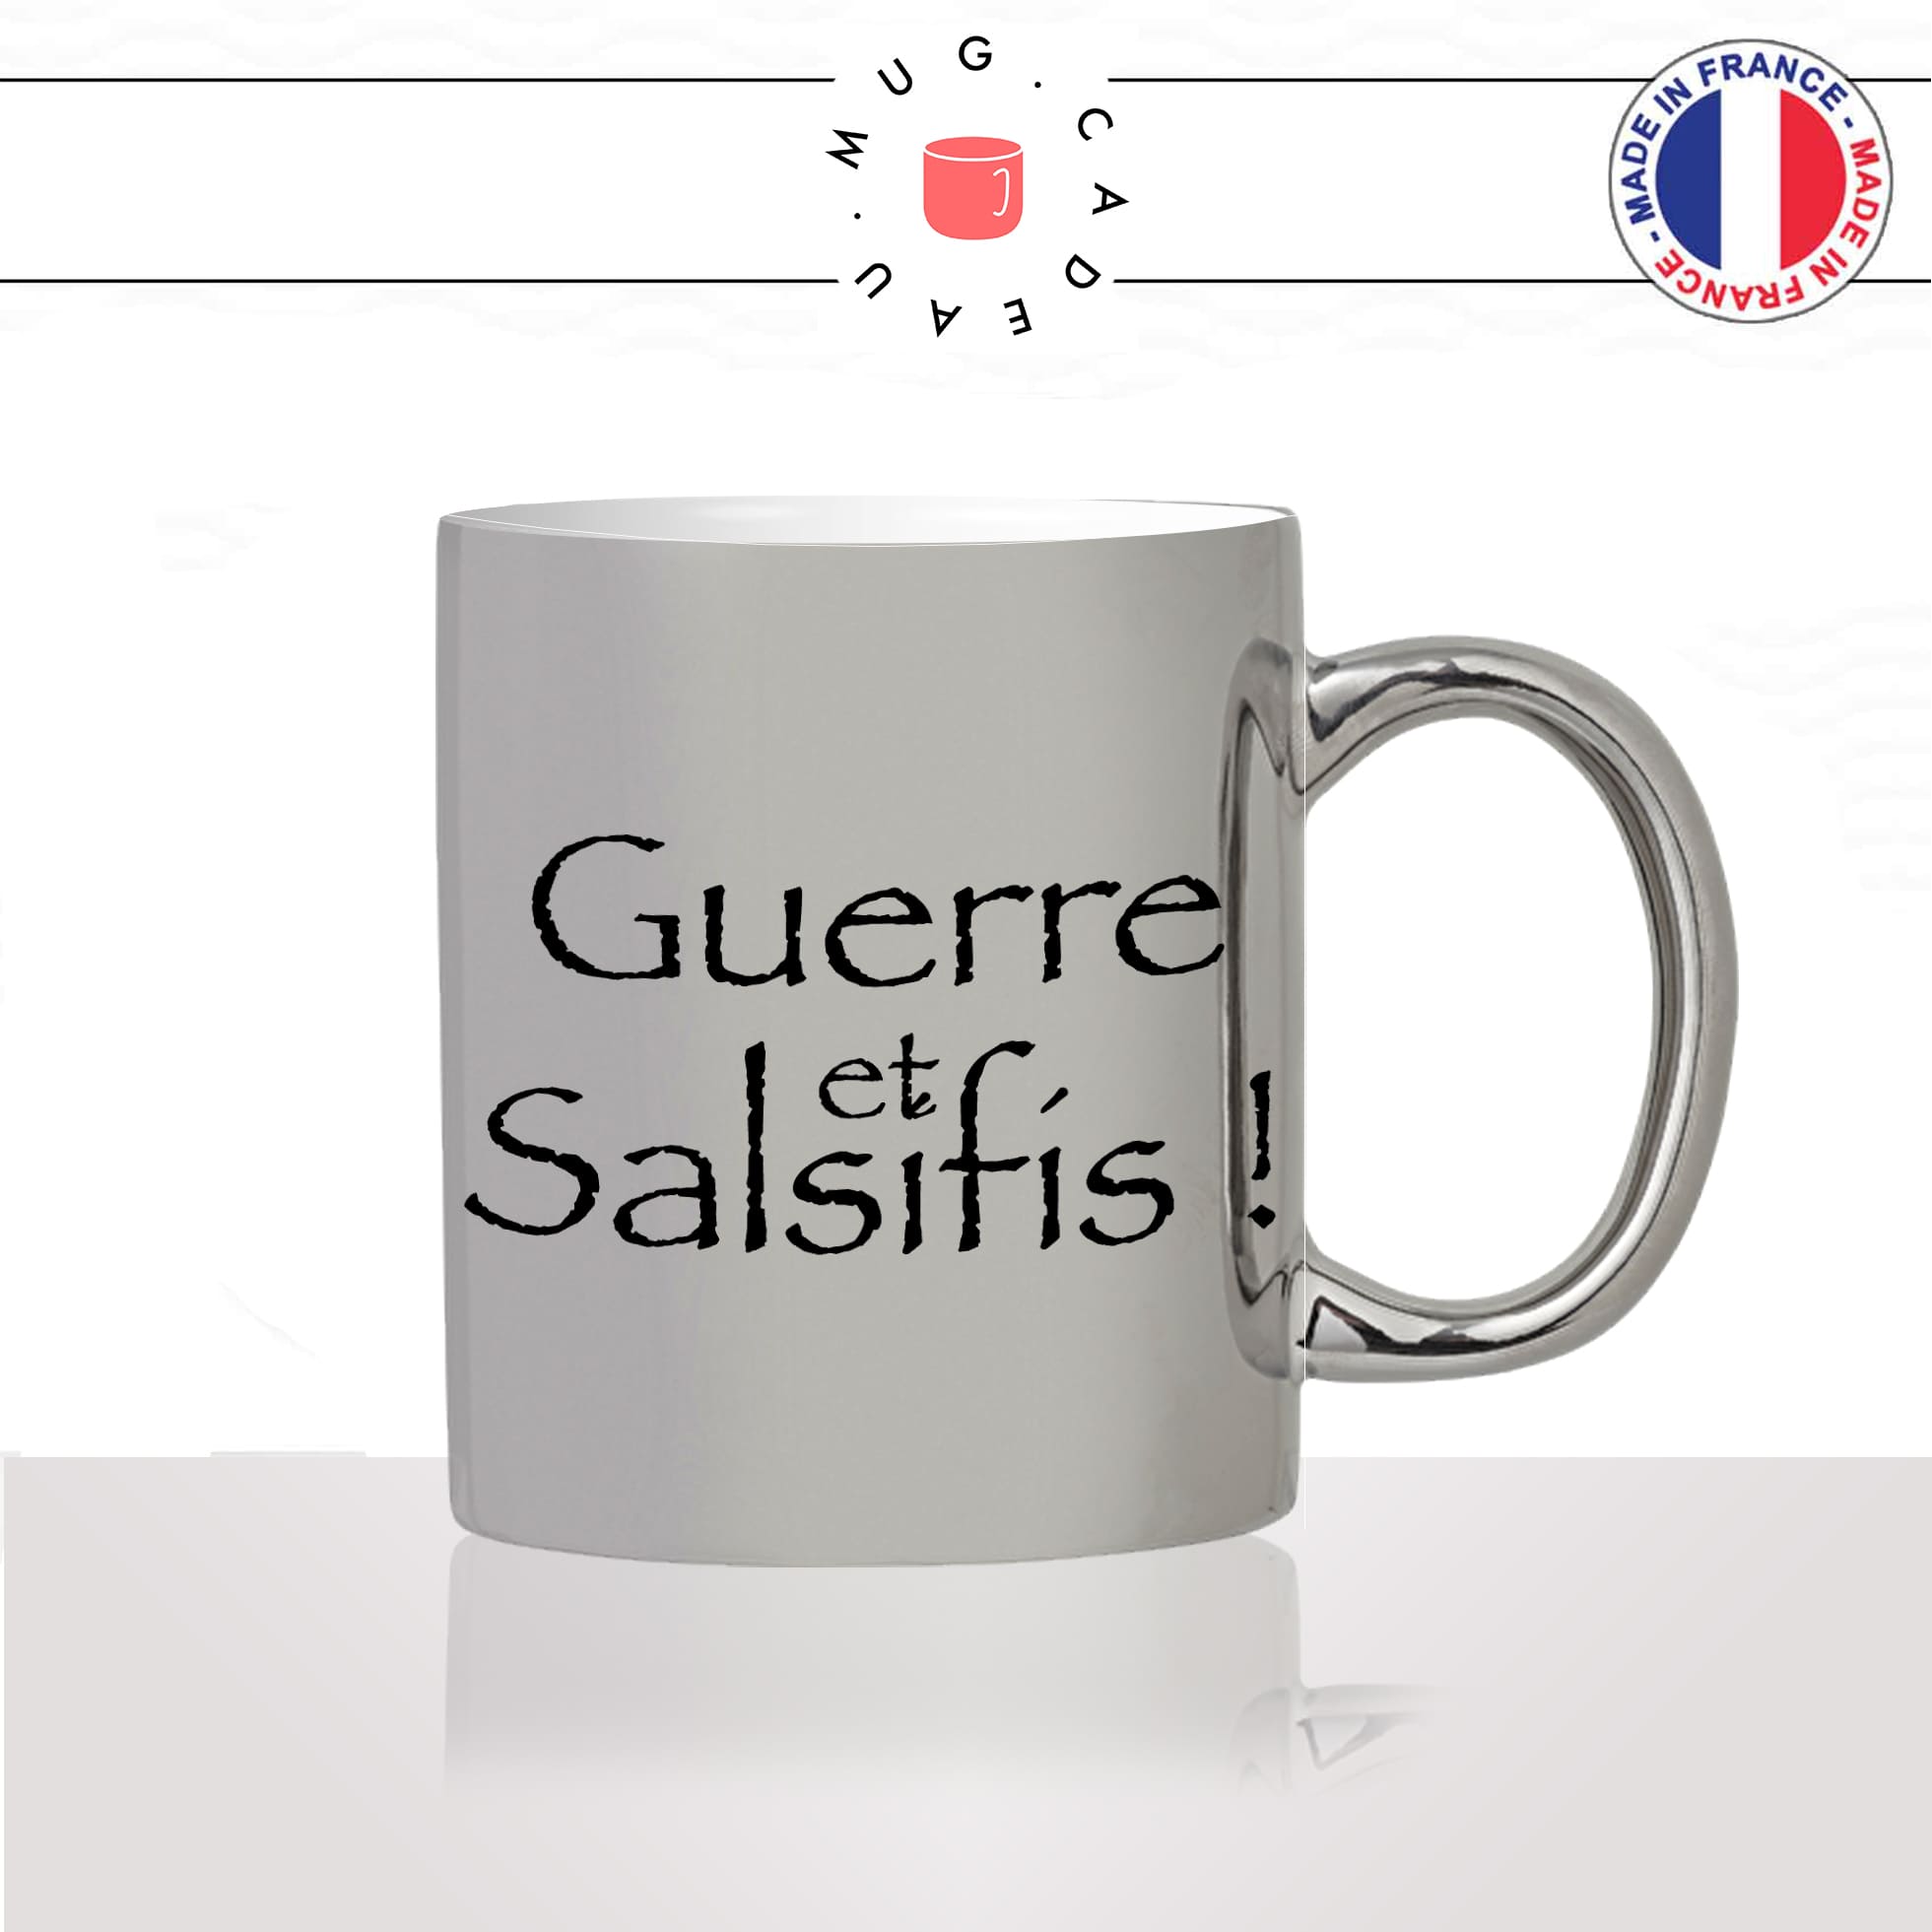 mug-tasse-argent-argenté-silver-série-francaise-culte-kaamelott-arthur-guerre-salsifi-burgonde-humour-télé-idée-cadeau-fun-cool-café-thé2